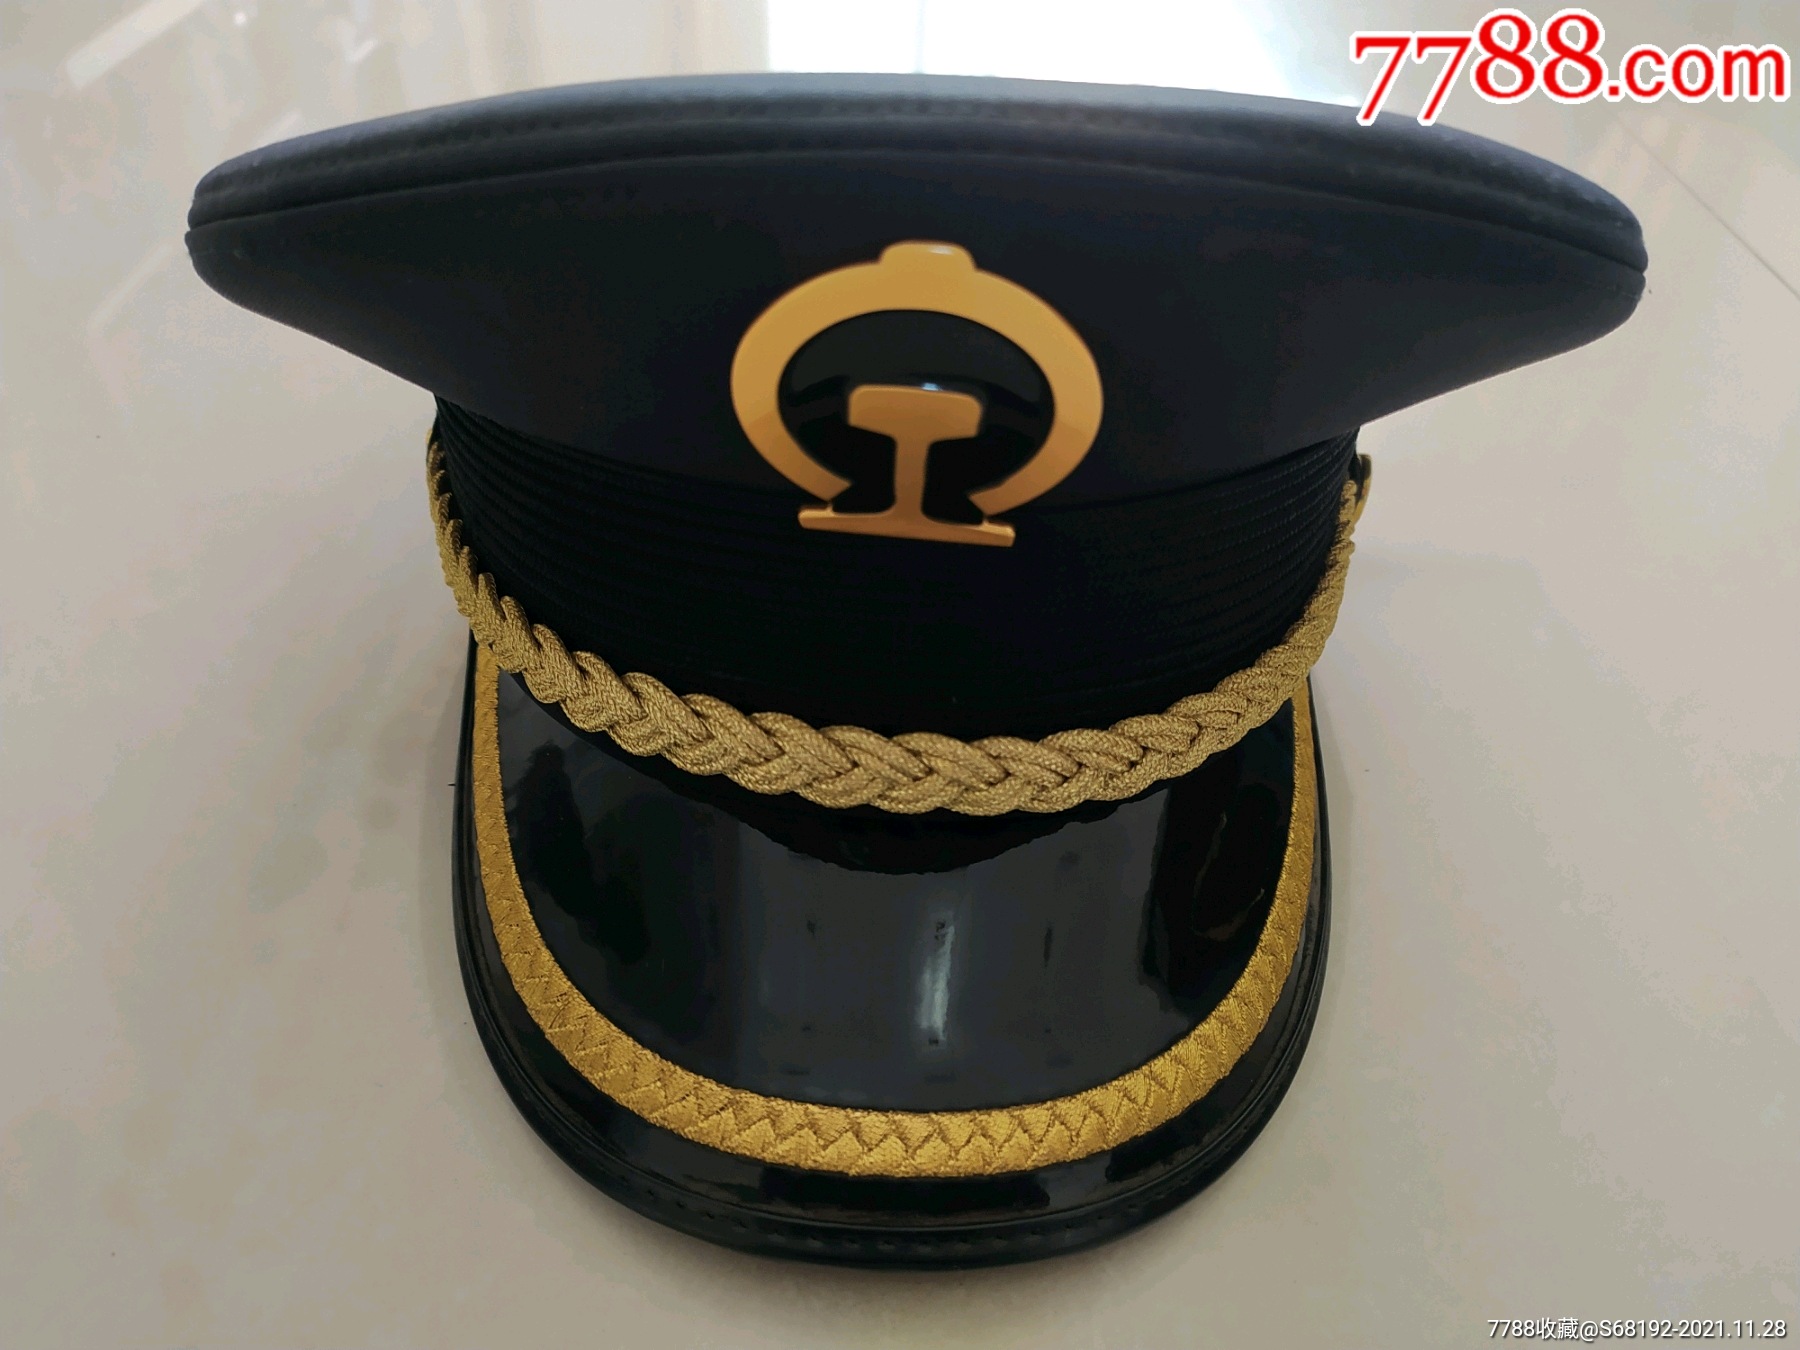 铁路帽(53码,北京同乐)-价格:28元-se84010723-帽子-零售-7788收藏